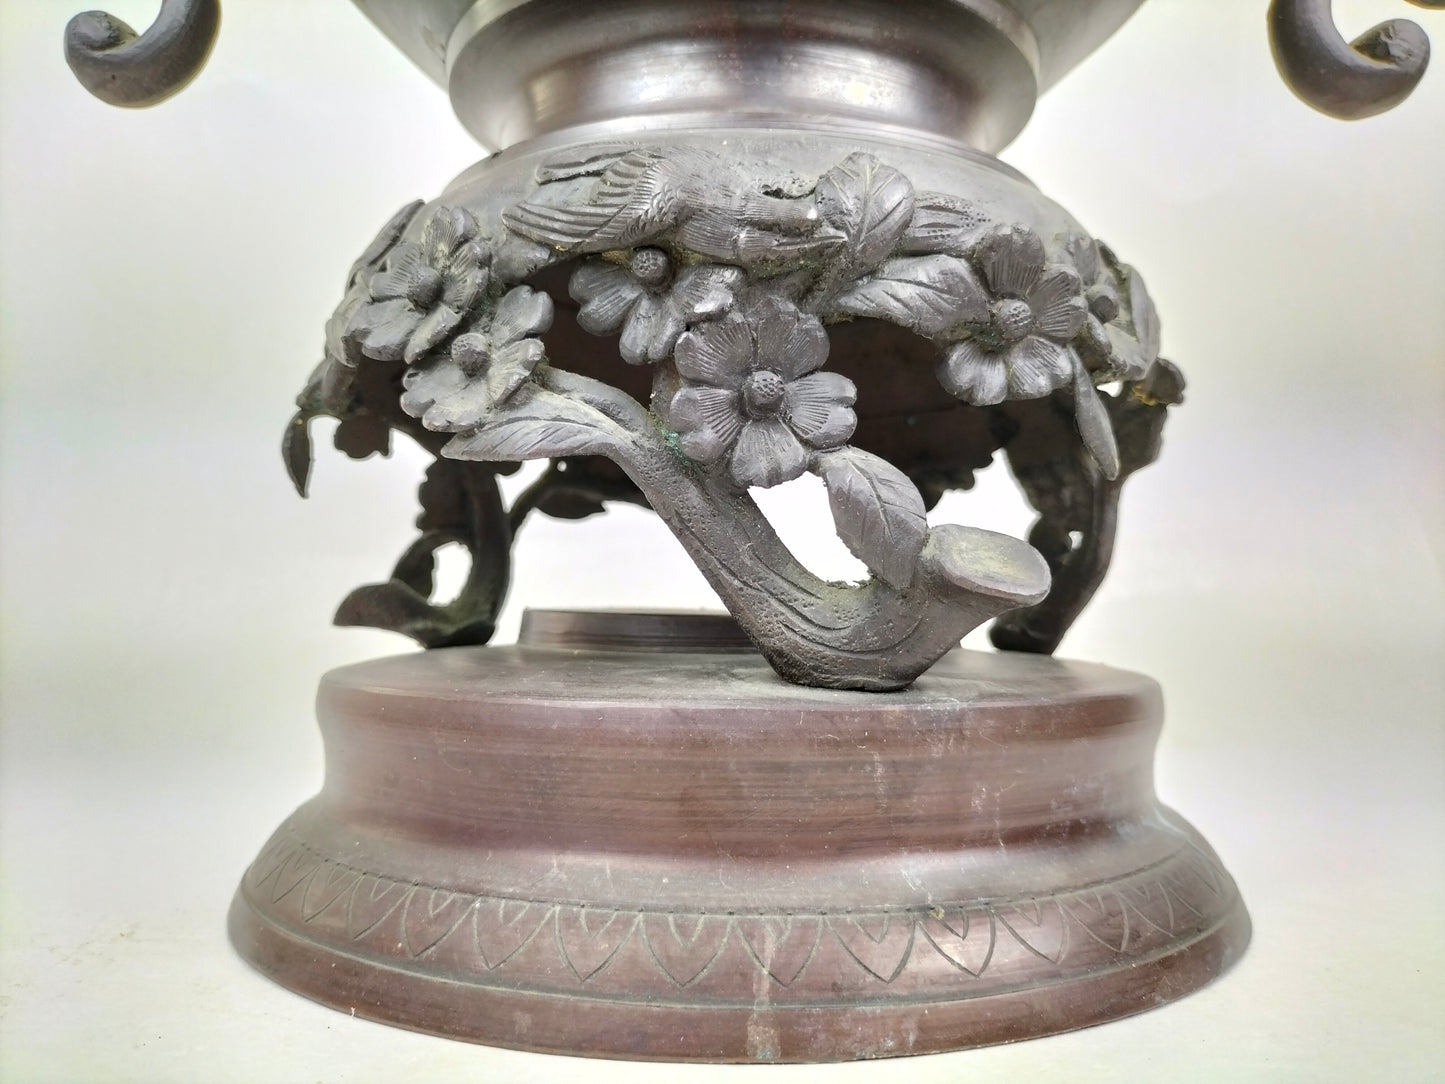 مبخرة يابانية عتيقة كبيرة من البرونز مزينة بالطيور وكلب فو // فترة ميجي - القرن التاسع عشر